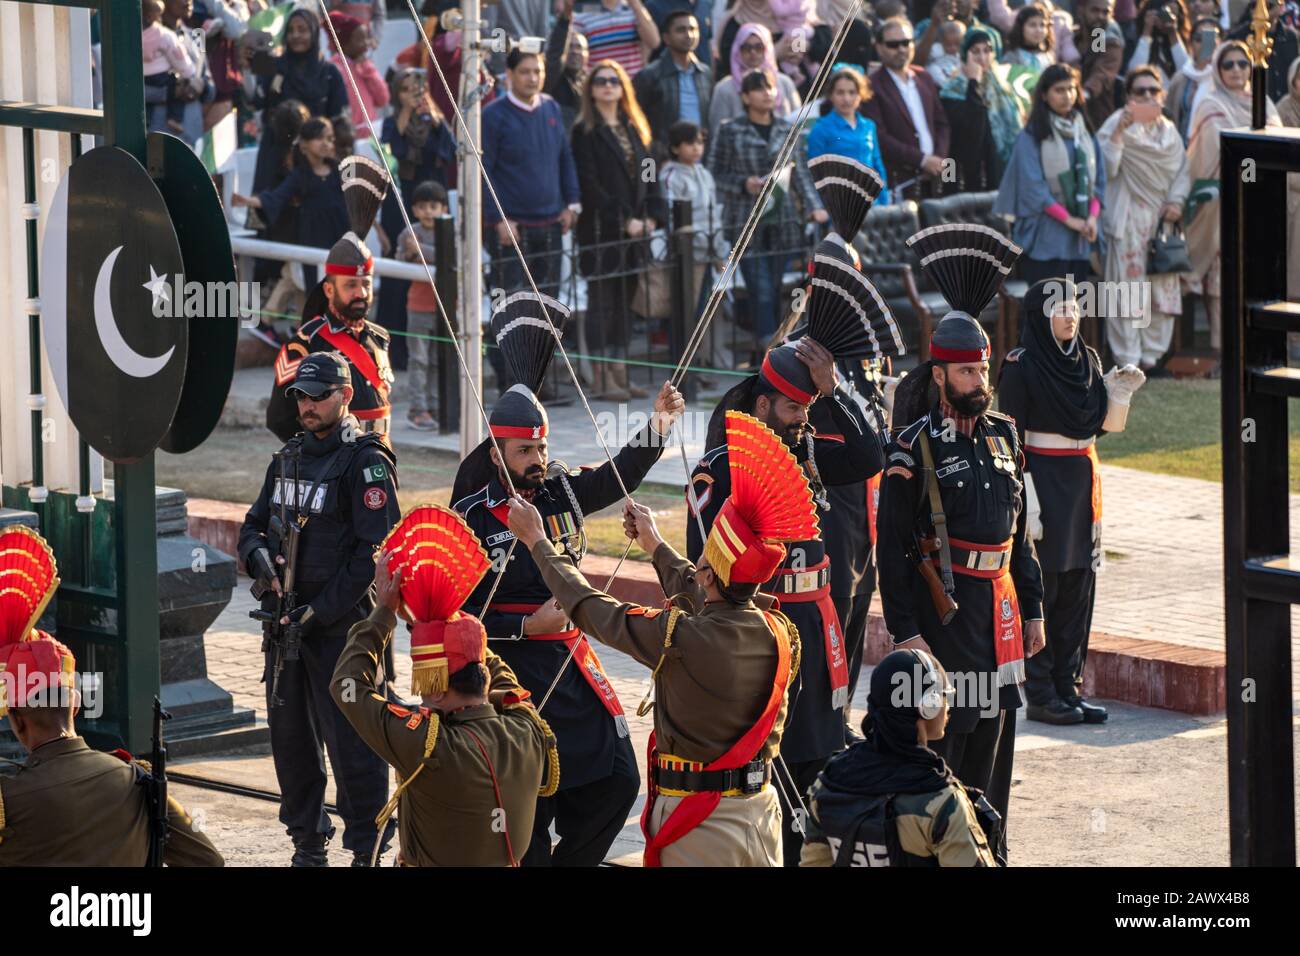 Amritsar India - febrero 8, 2020: La Fuerza de Seguridad Fronteriza India y los Rangers de Pakistán (uniformes negros) bajan las banderas en la ceremonia de clausura de la frontera de Wagah Foto de stock